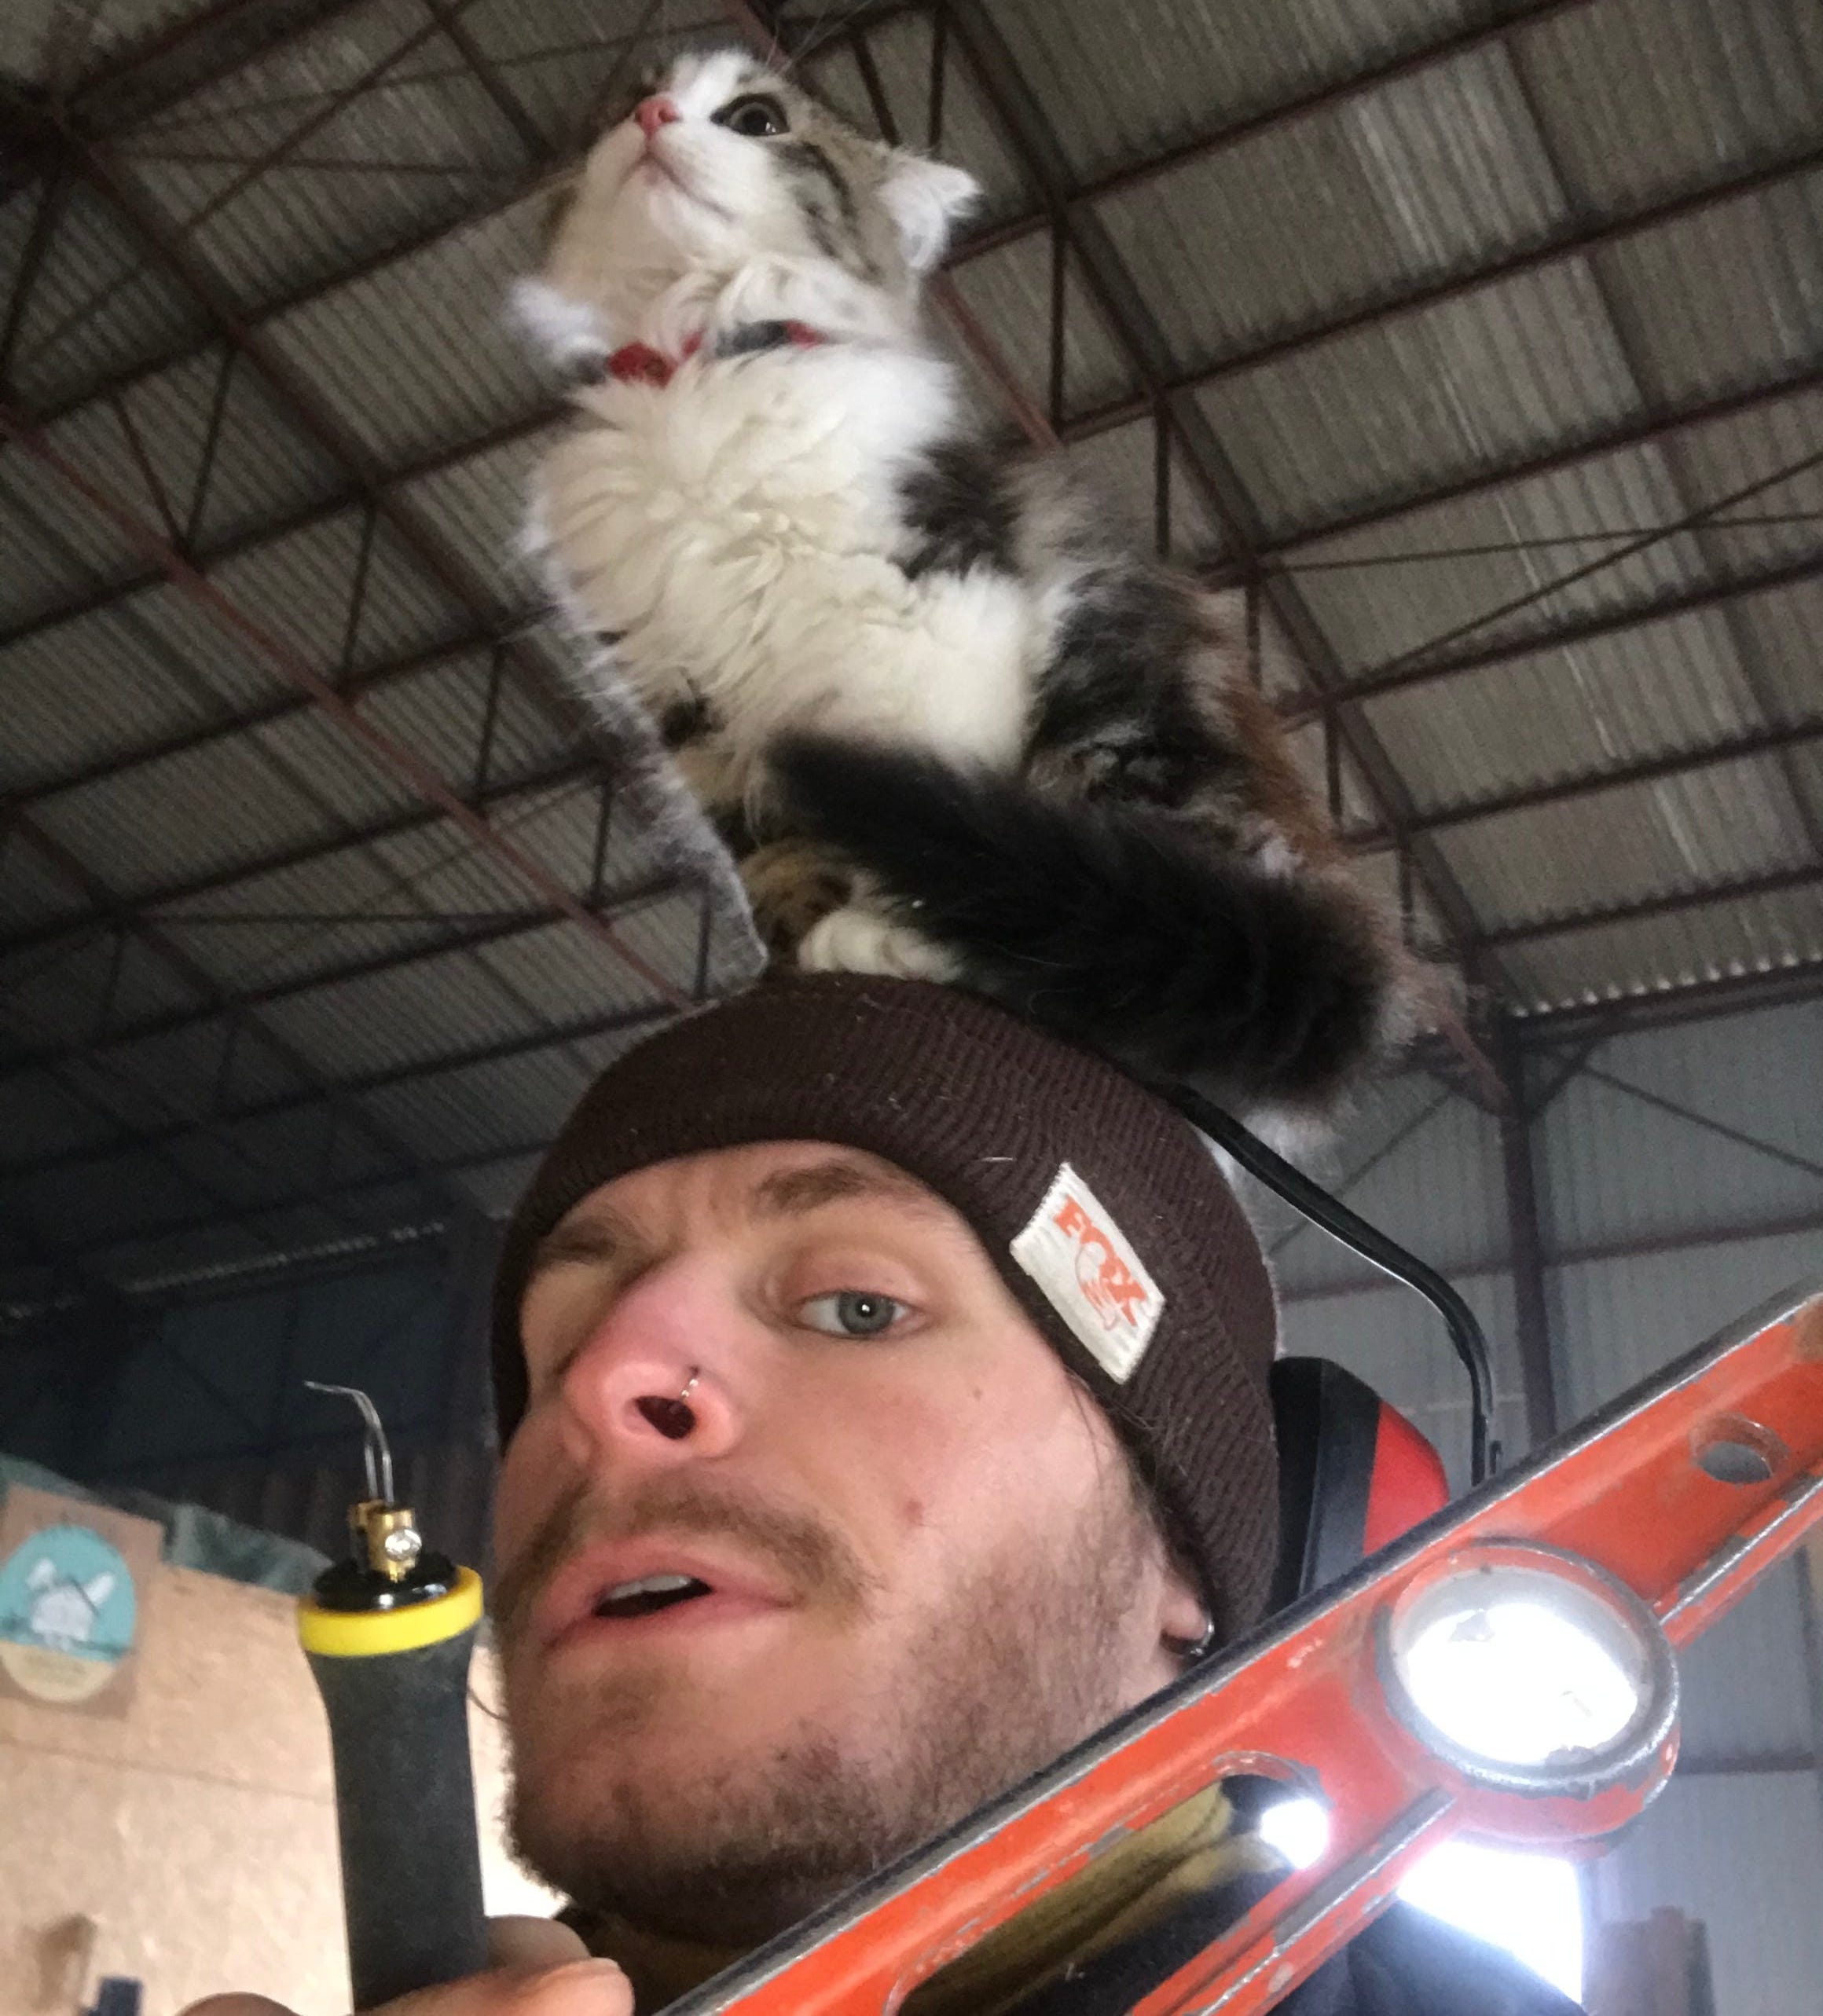 Ein Mann trägt Werkzeuge und eine Katze sitzt auf seinem Kopf.